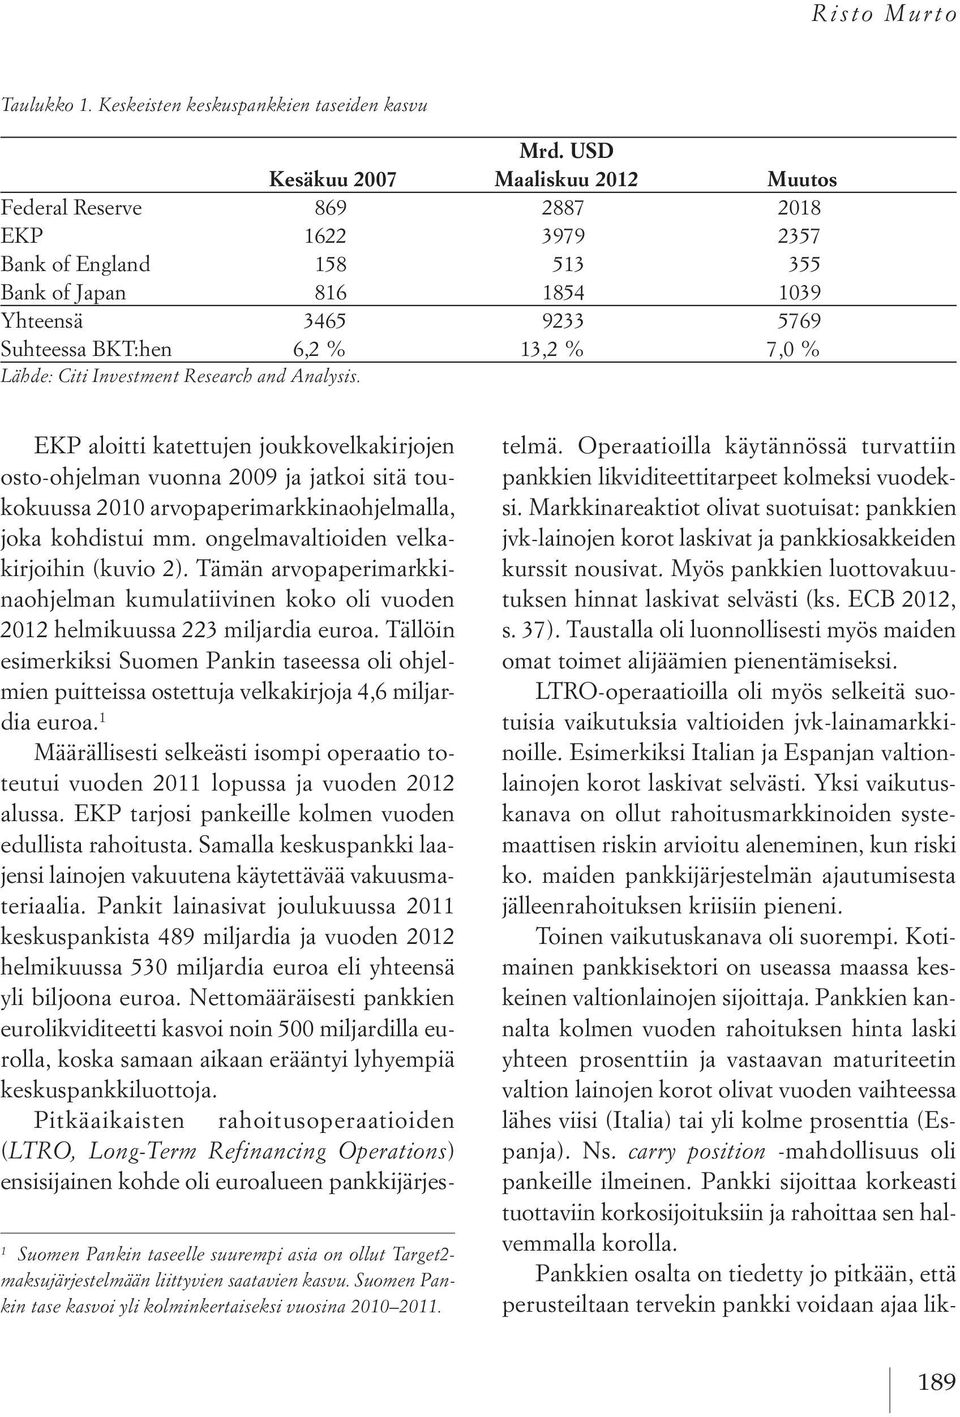 7,0 % Lähde: Citi Investment Research and Analysis. 1 Suomen Pankin taseelle suurempi asia on ollut Target2- maksujärjestelmään liittyvien saatavien kasvu.